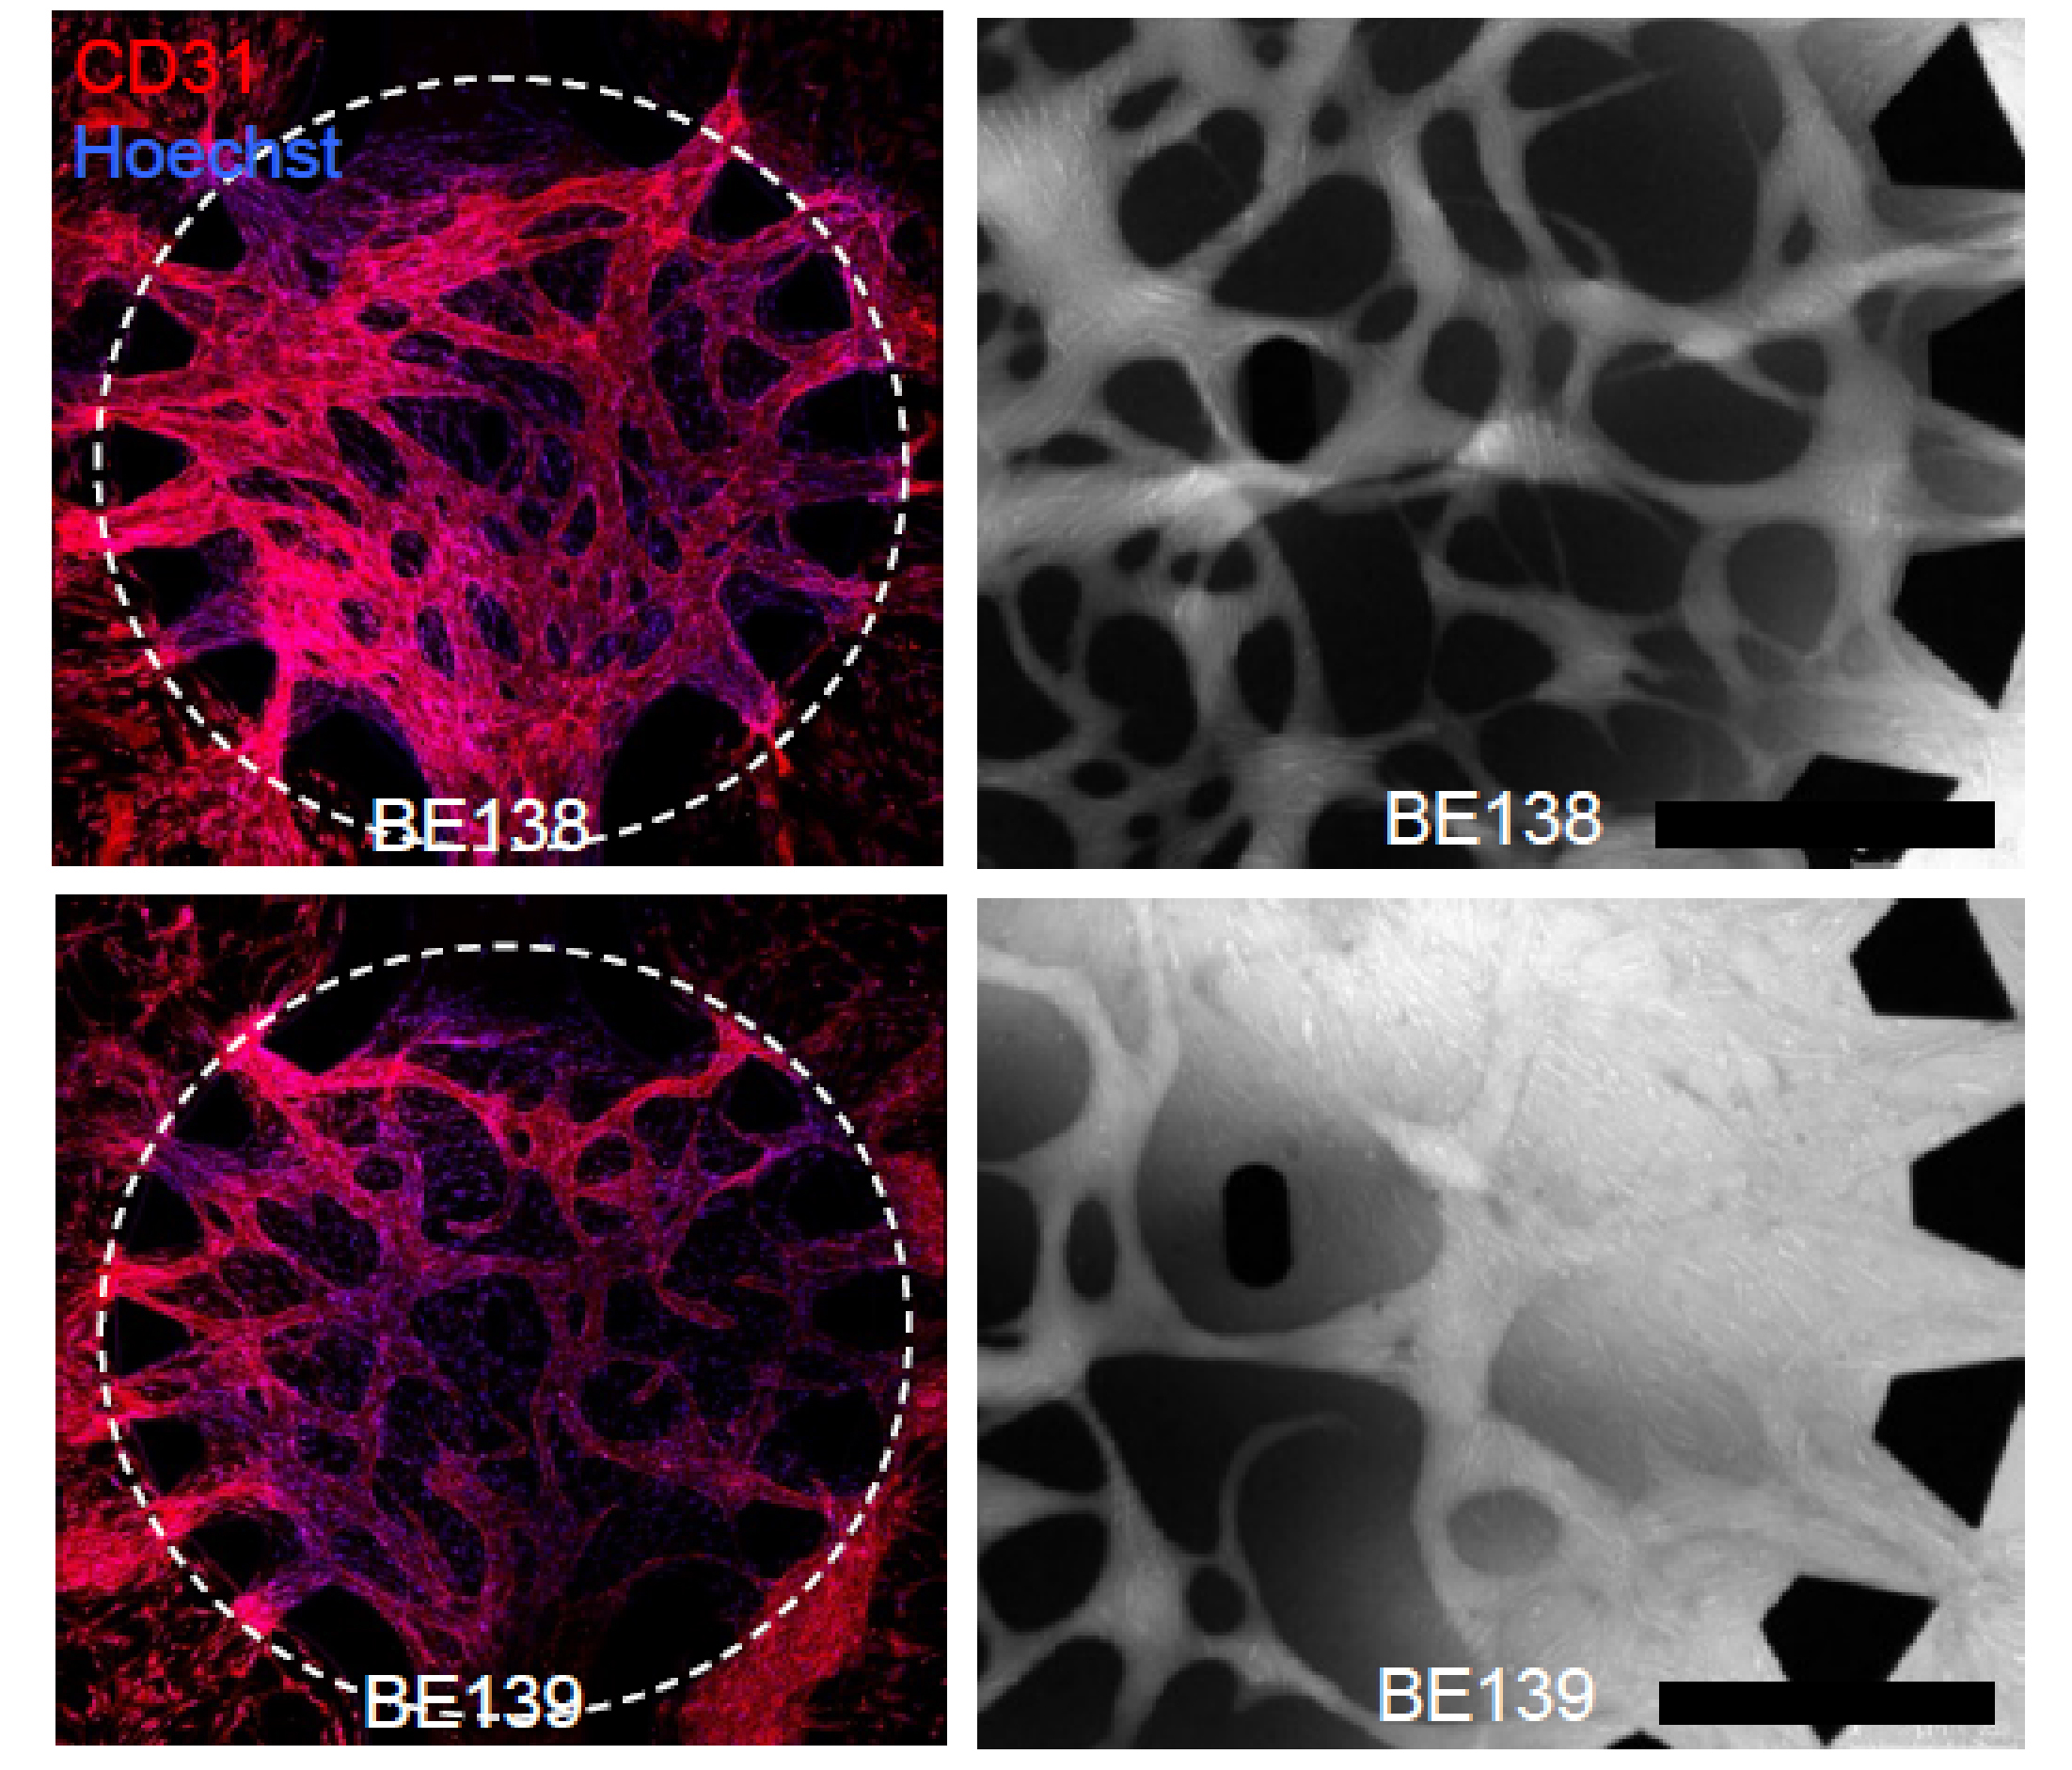 Fluoreszenzmikroskopie-Bilder von Blutgefässen, die von Perizyten abgedichtet werden. Die obere Reihe zeigt Blutgefässe mit Perizyten aus normalem Lungengewebe, verglichen zu Blutgefässen mit Perizyten aus Tumorgewebe (unten). Die Gefässe unten sind deutlich undichter. © Inselspital Bern/Universität Bern.